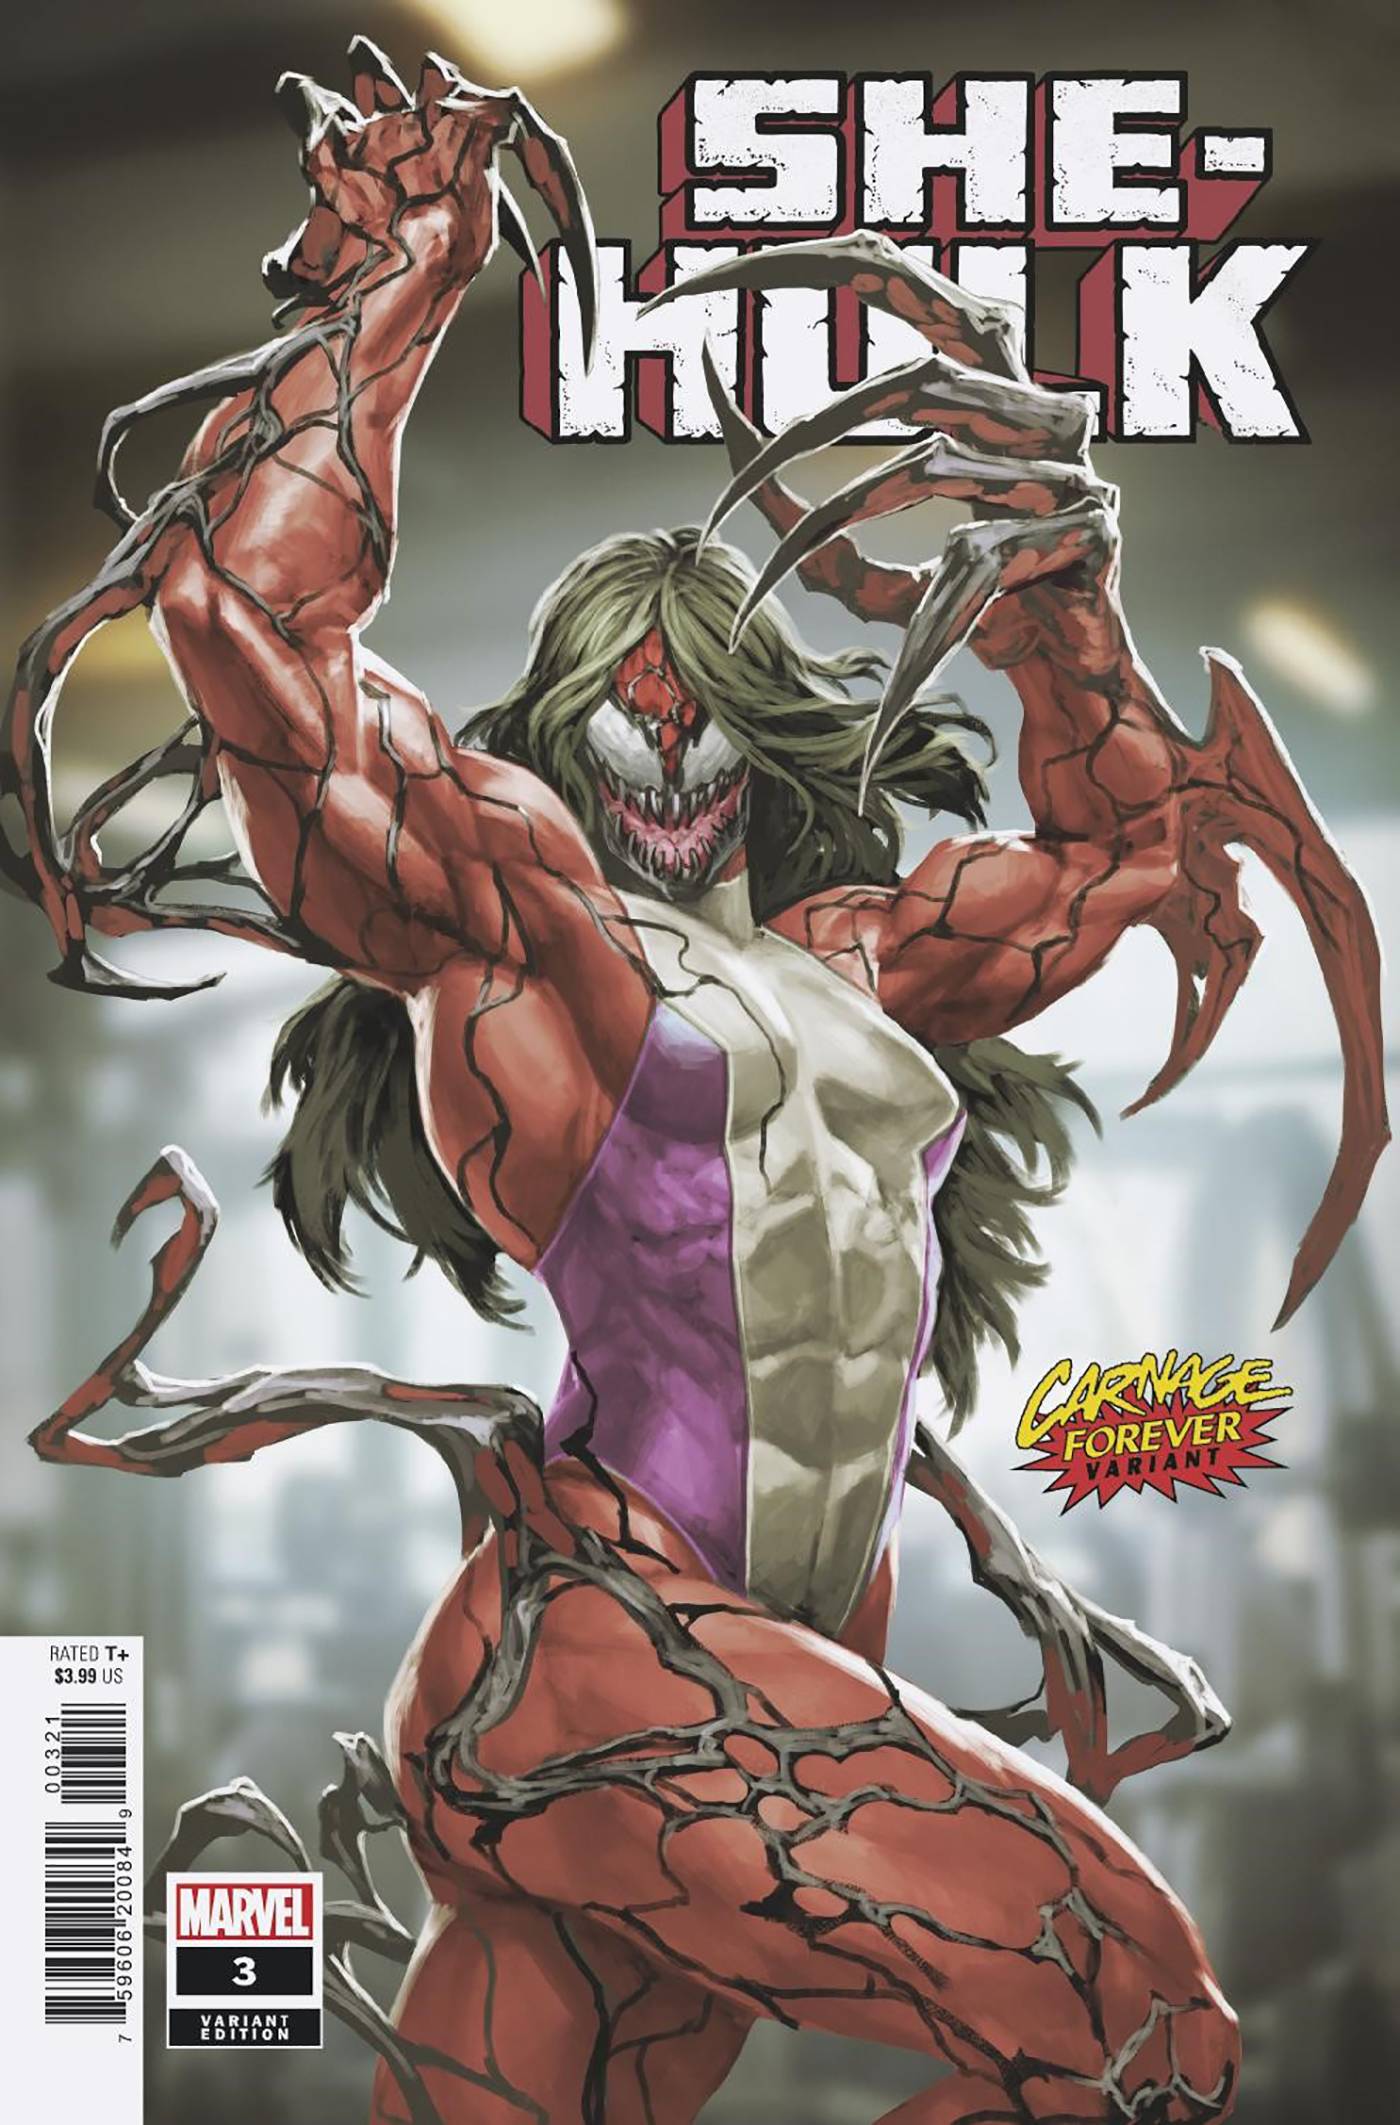 She-Hulk #3 Skan Carnage Forever Variant